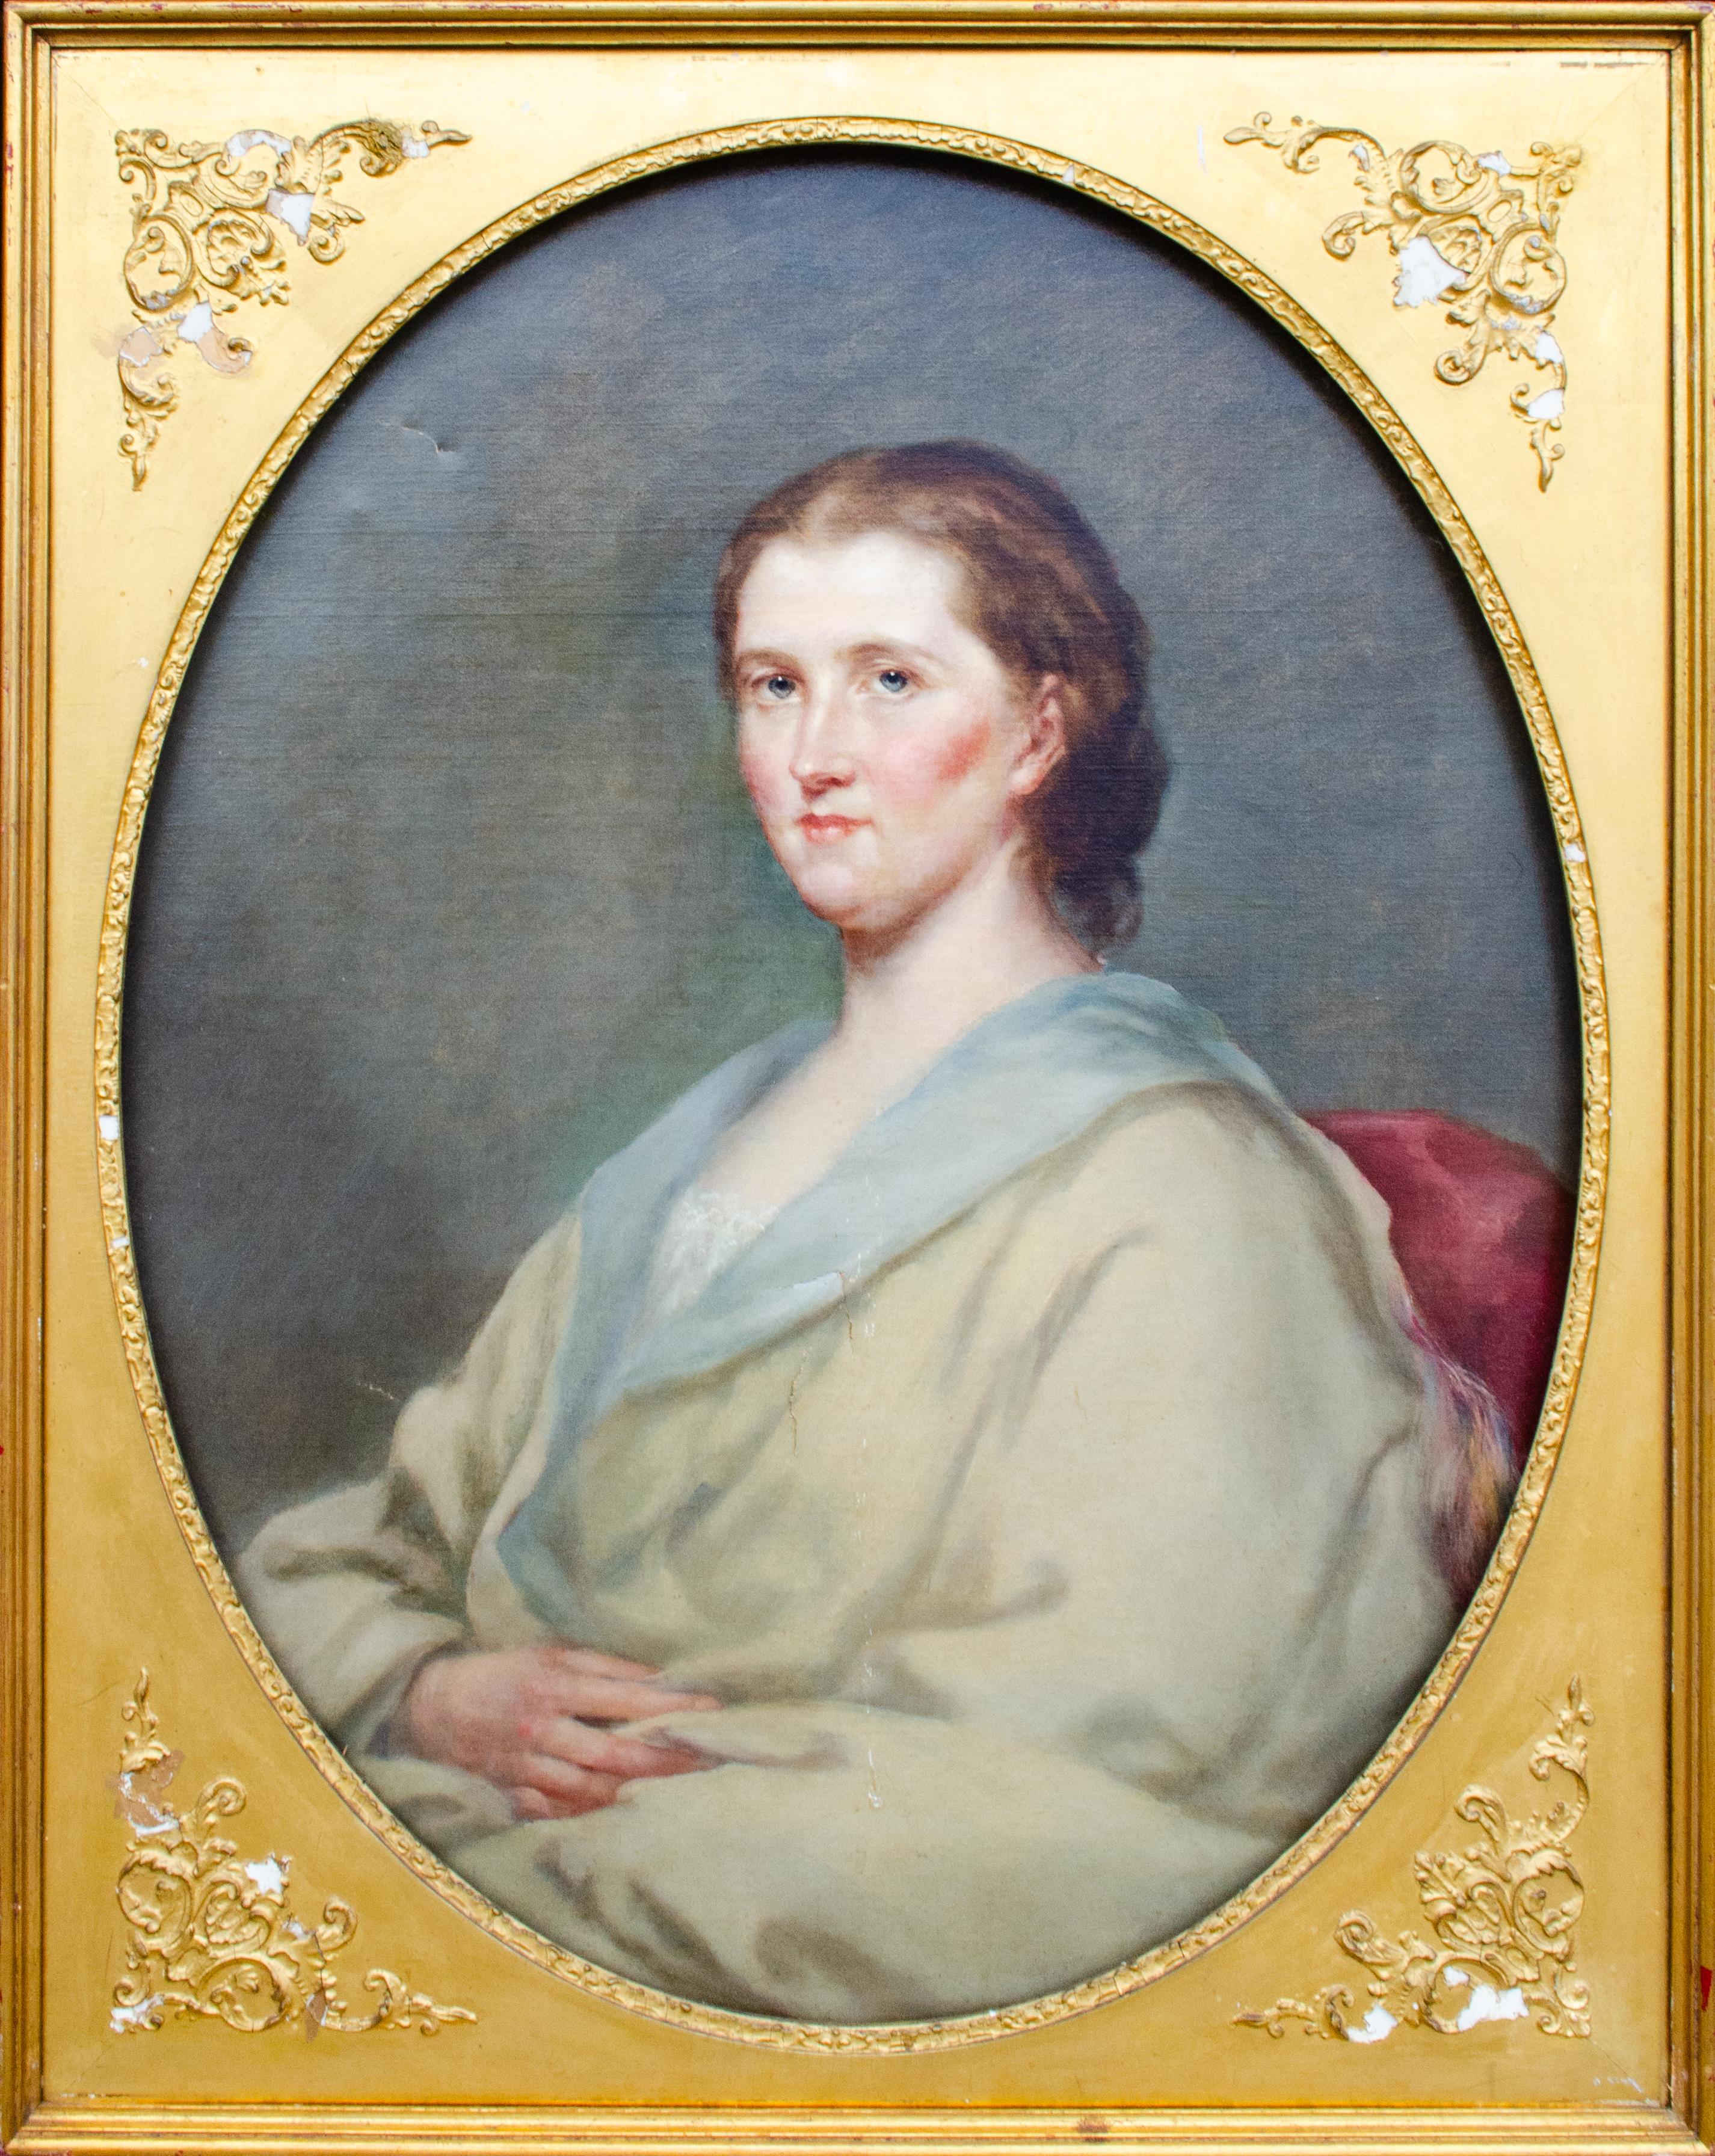 Portrait Painting 19th Century American School - Portrait d'une femme de l'école américaine